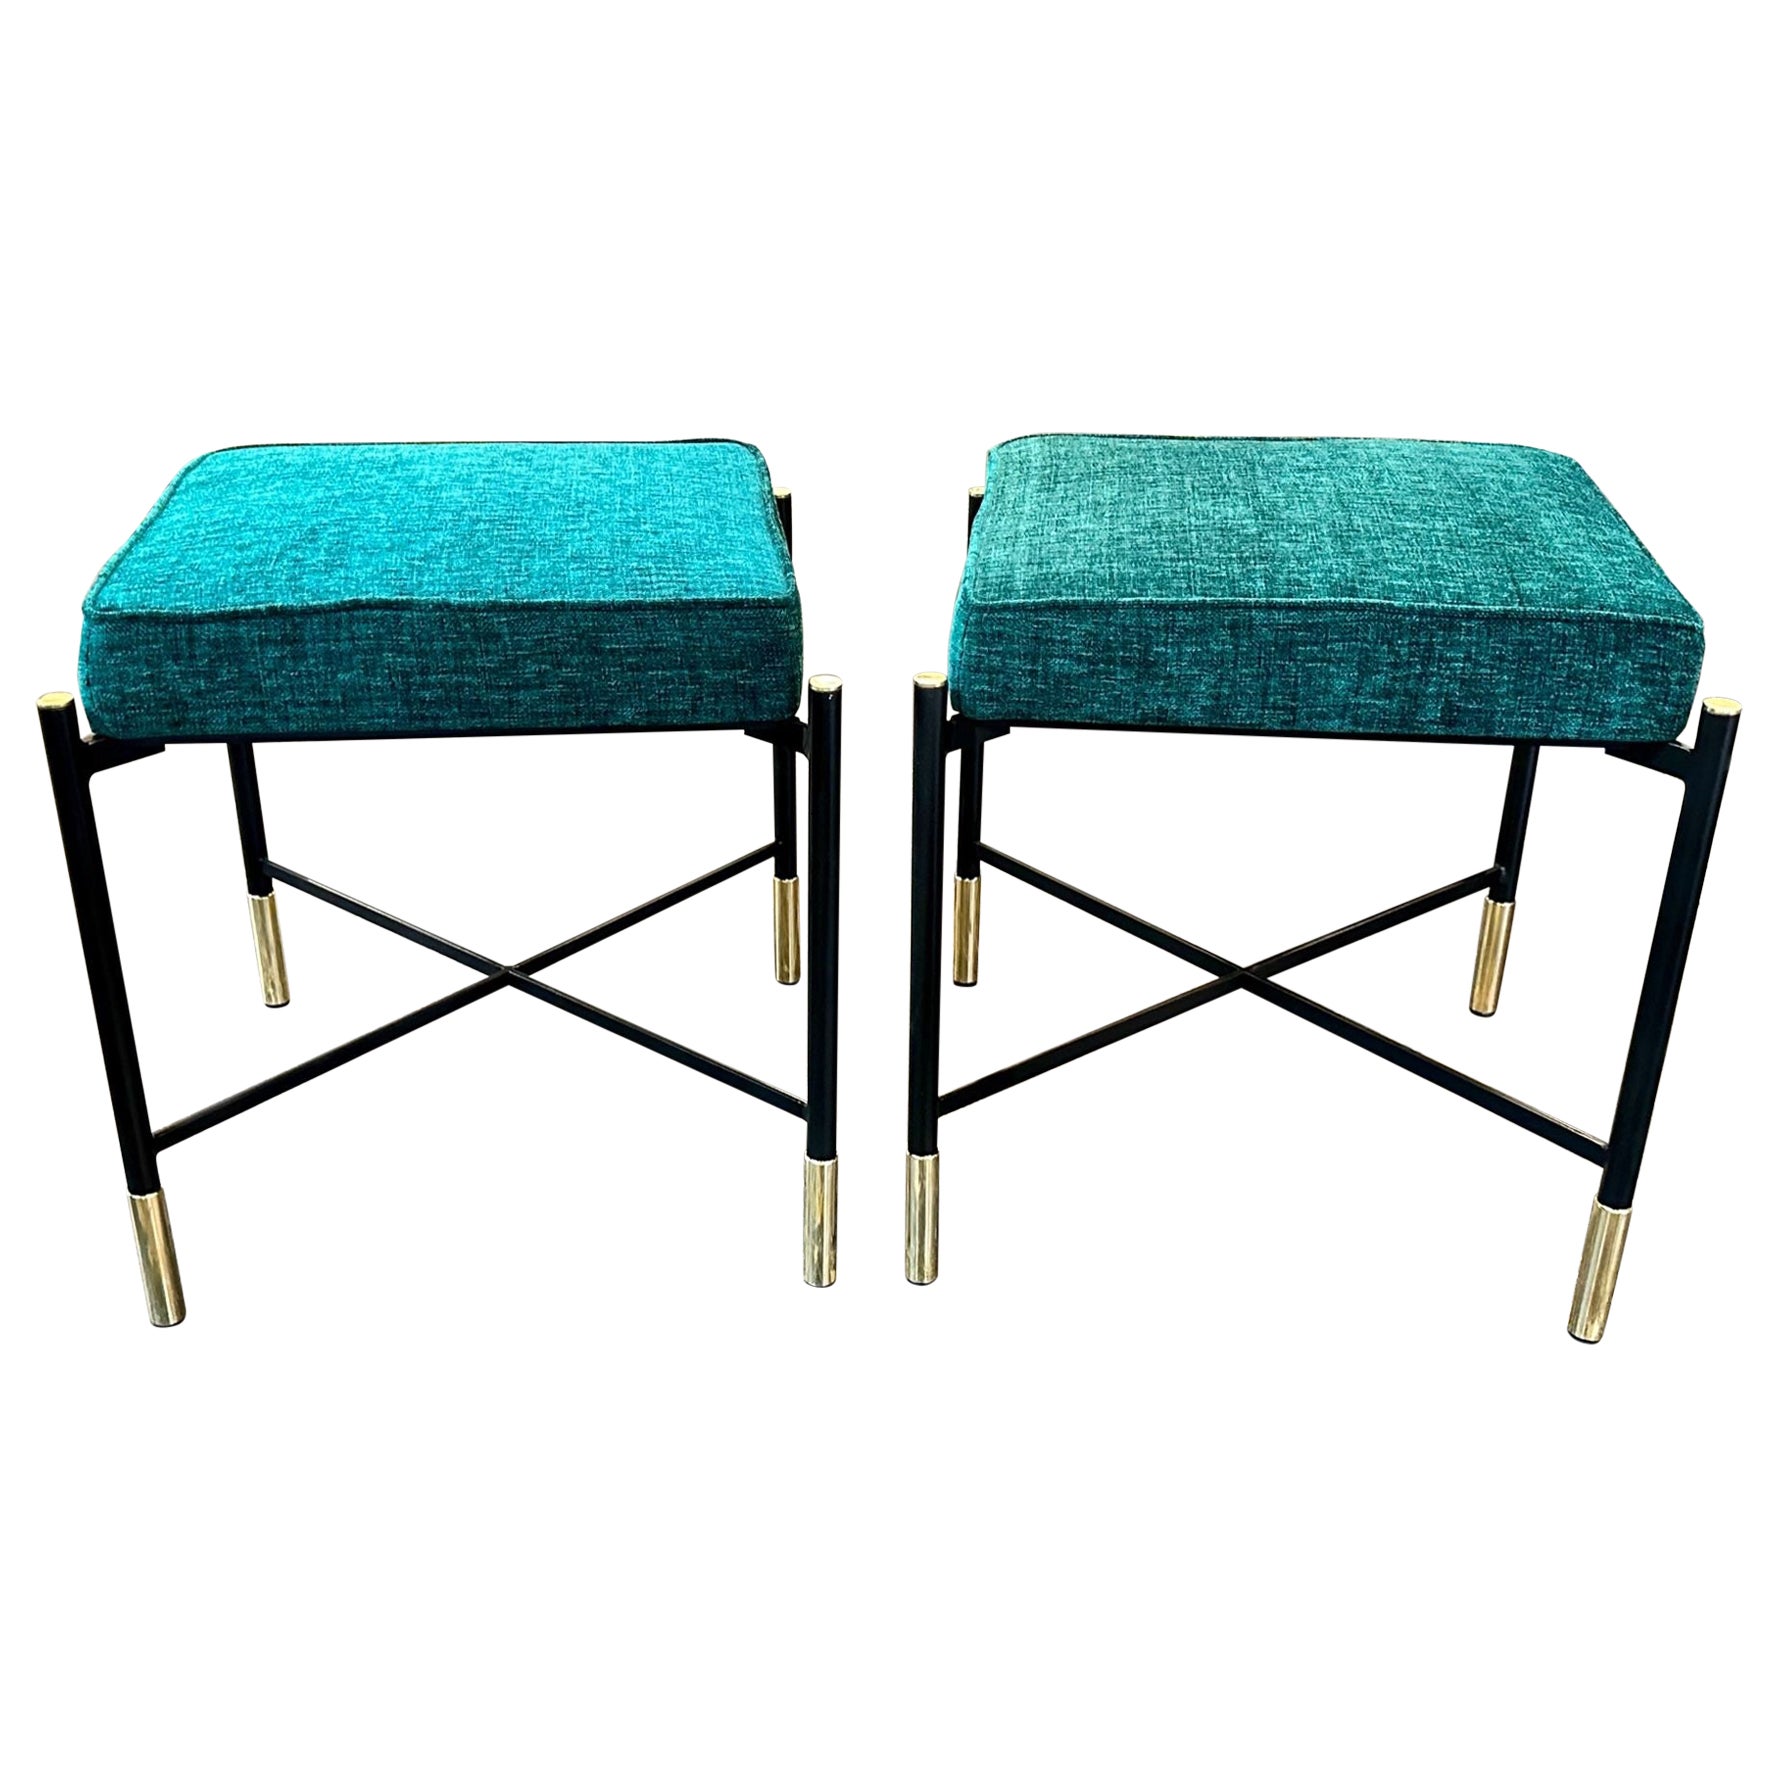 Italian Modern Upholstered Bench For Sale